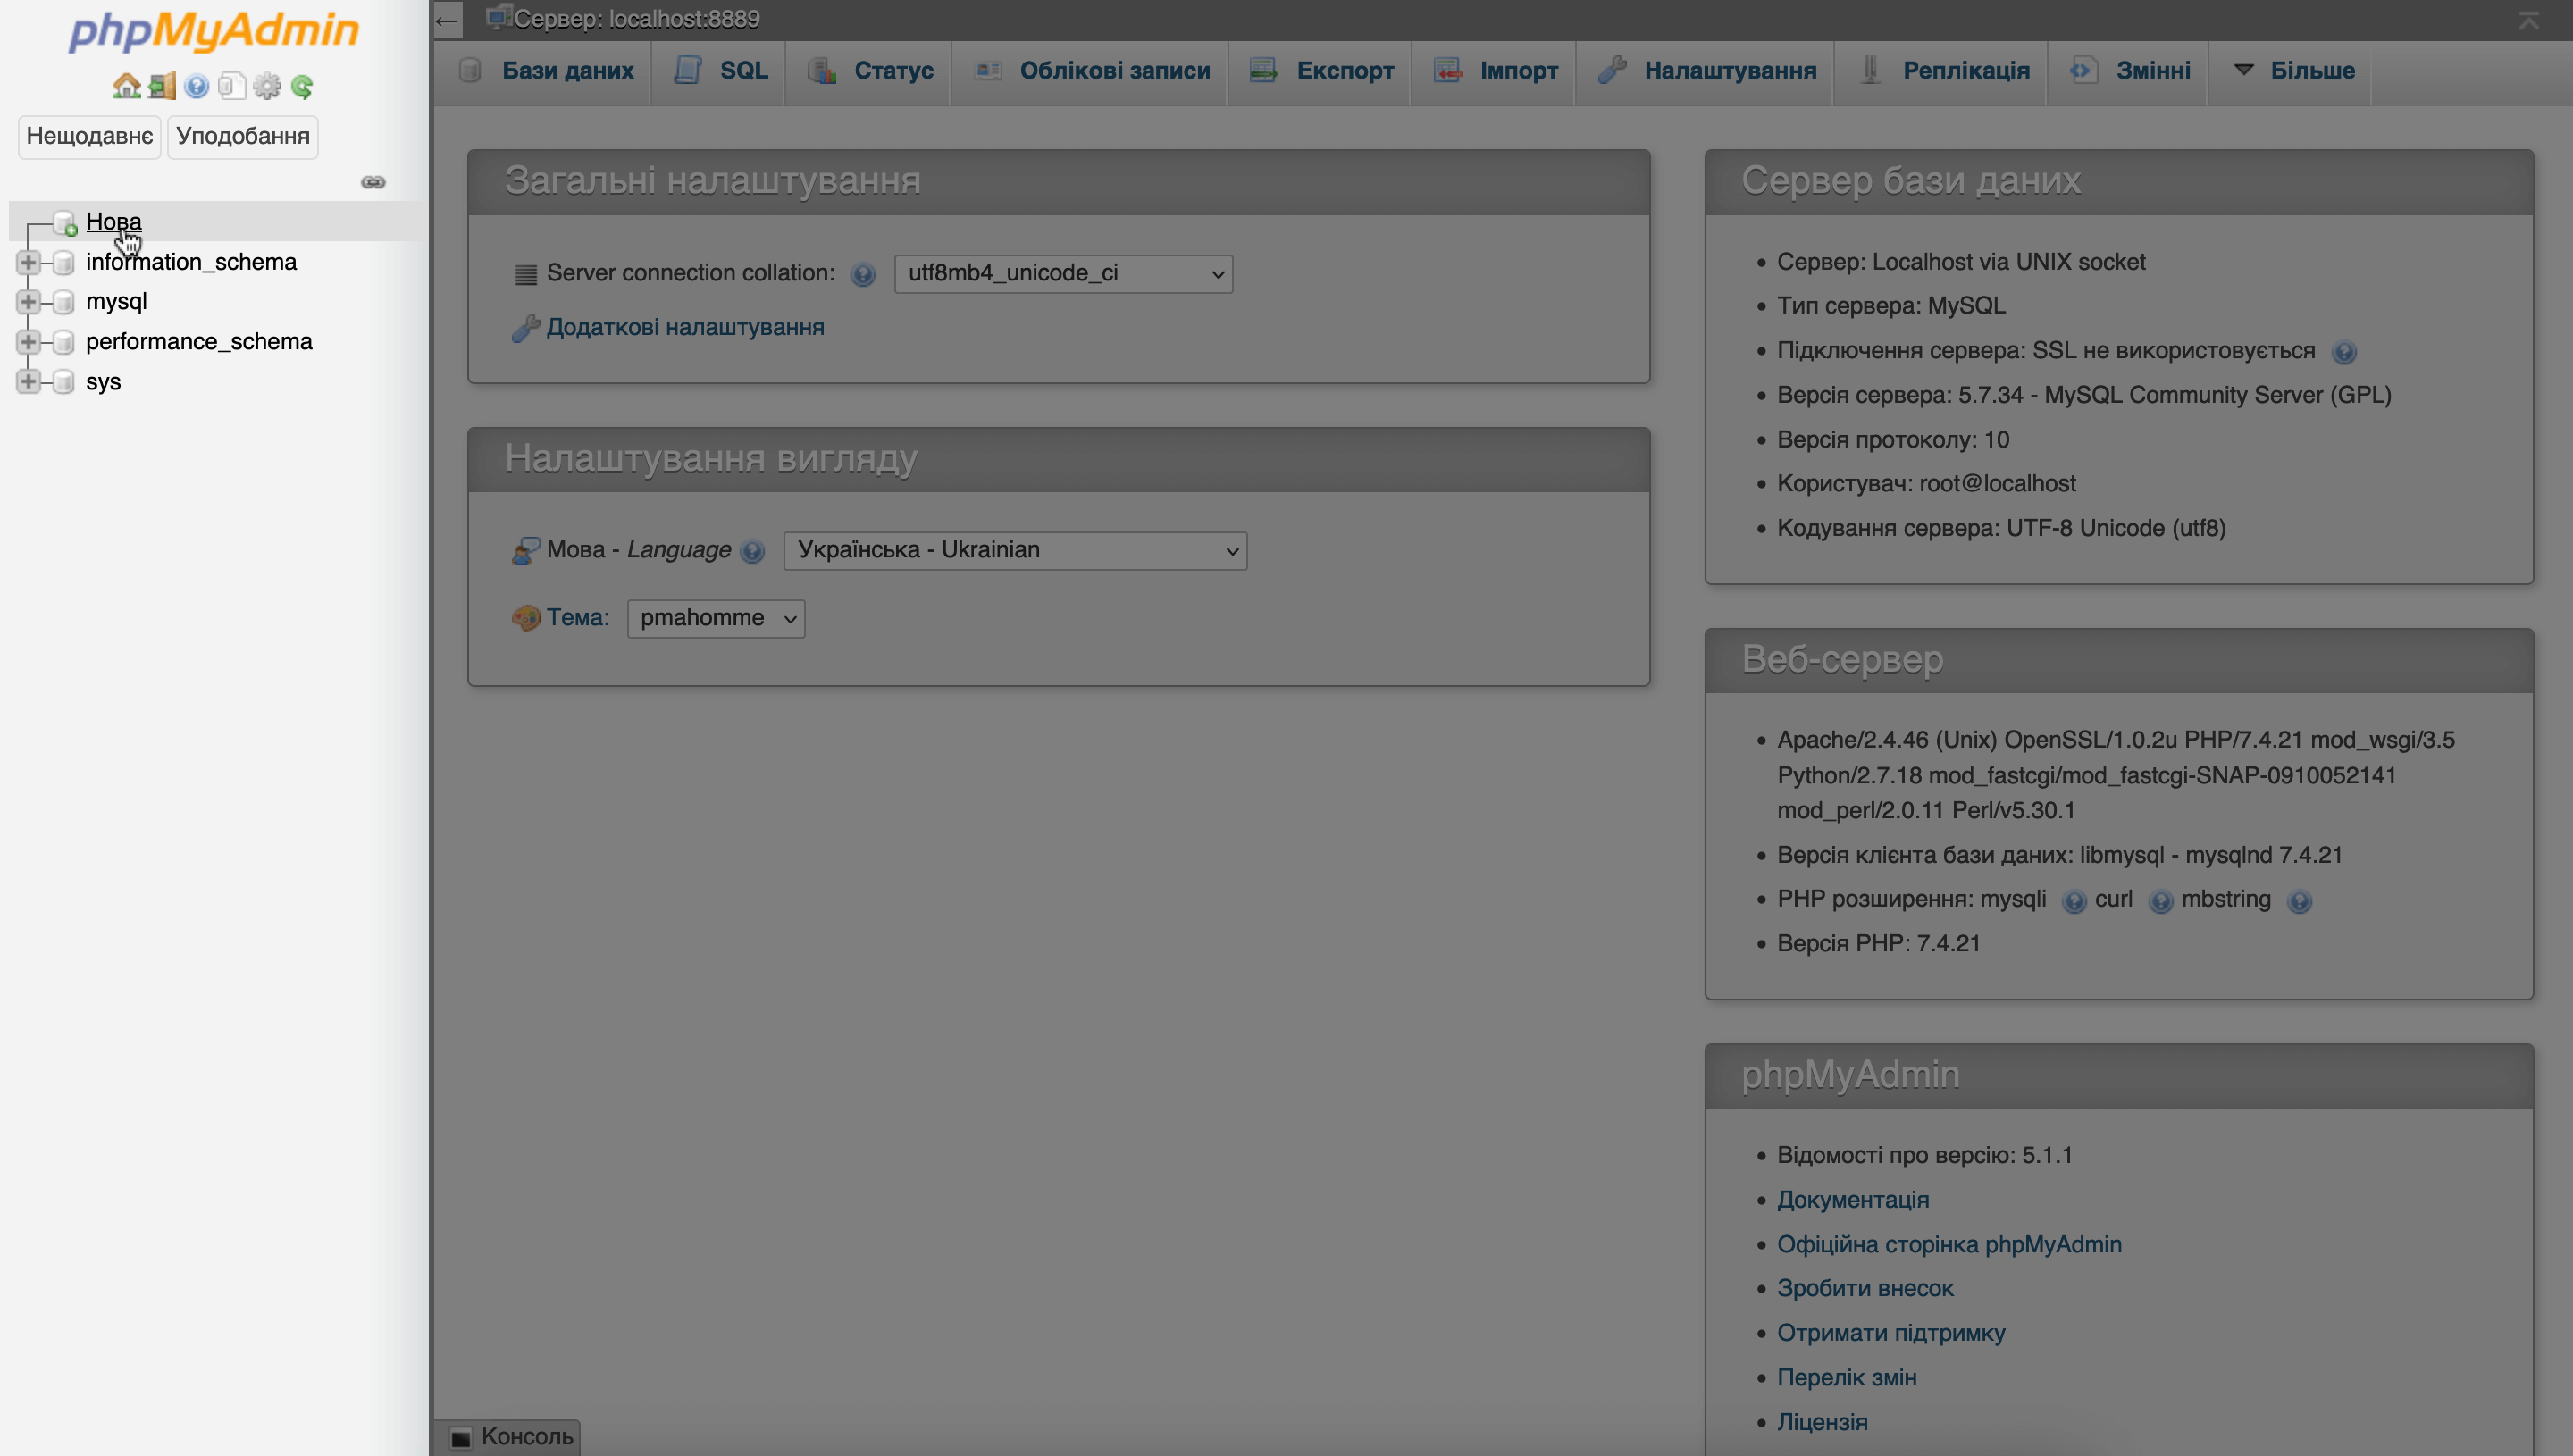 Як встановити Вордпрес локально — Бічна панель на головній сторінці phpMyAdmin